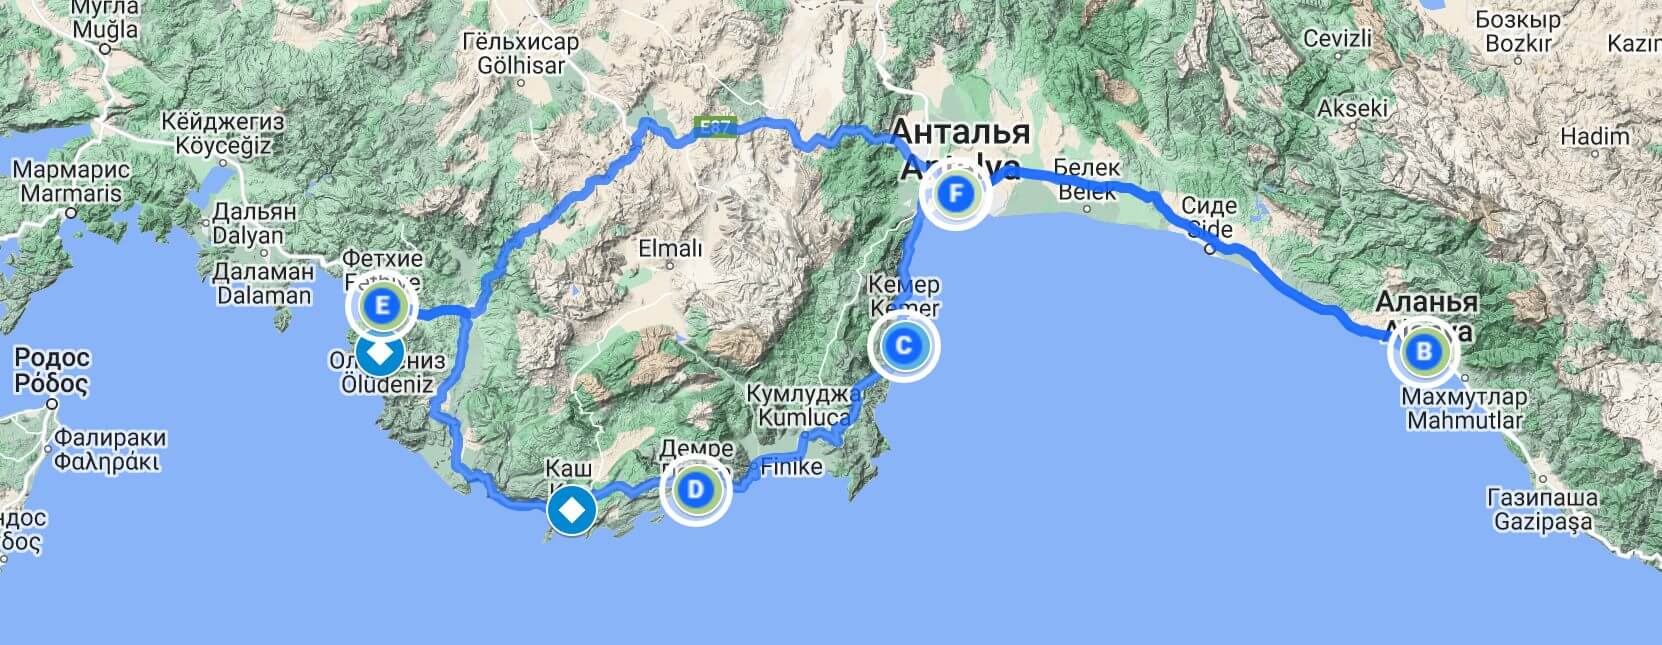 Схема маршрута по югу Турции